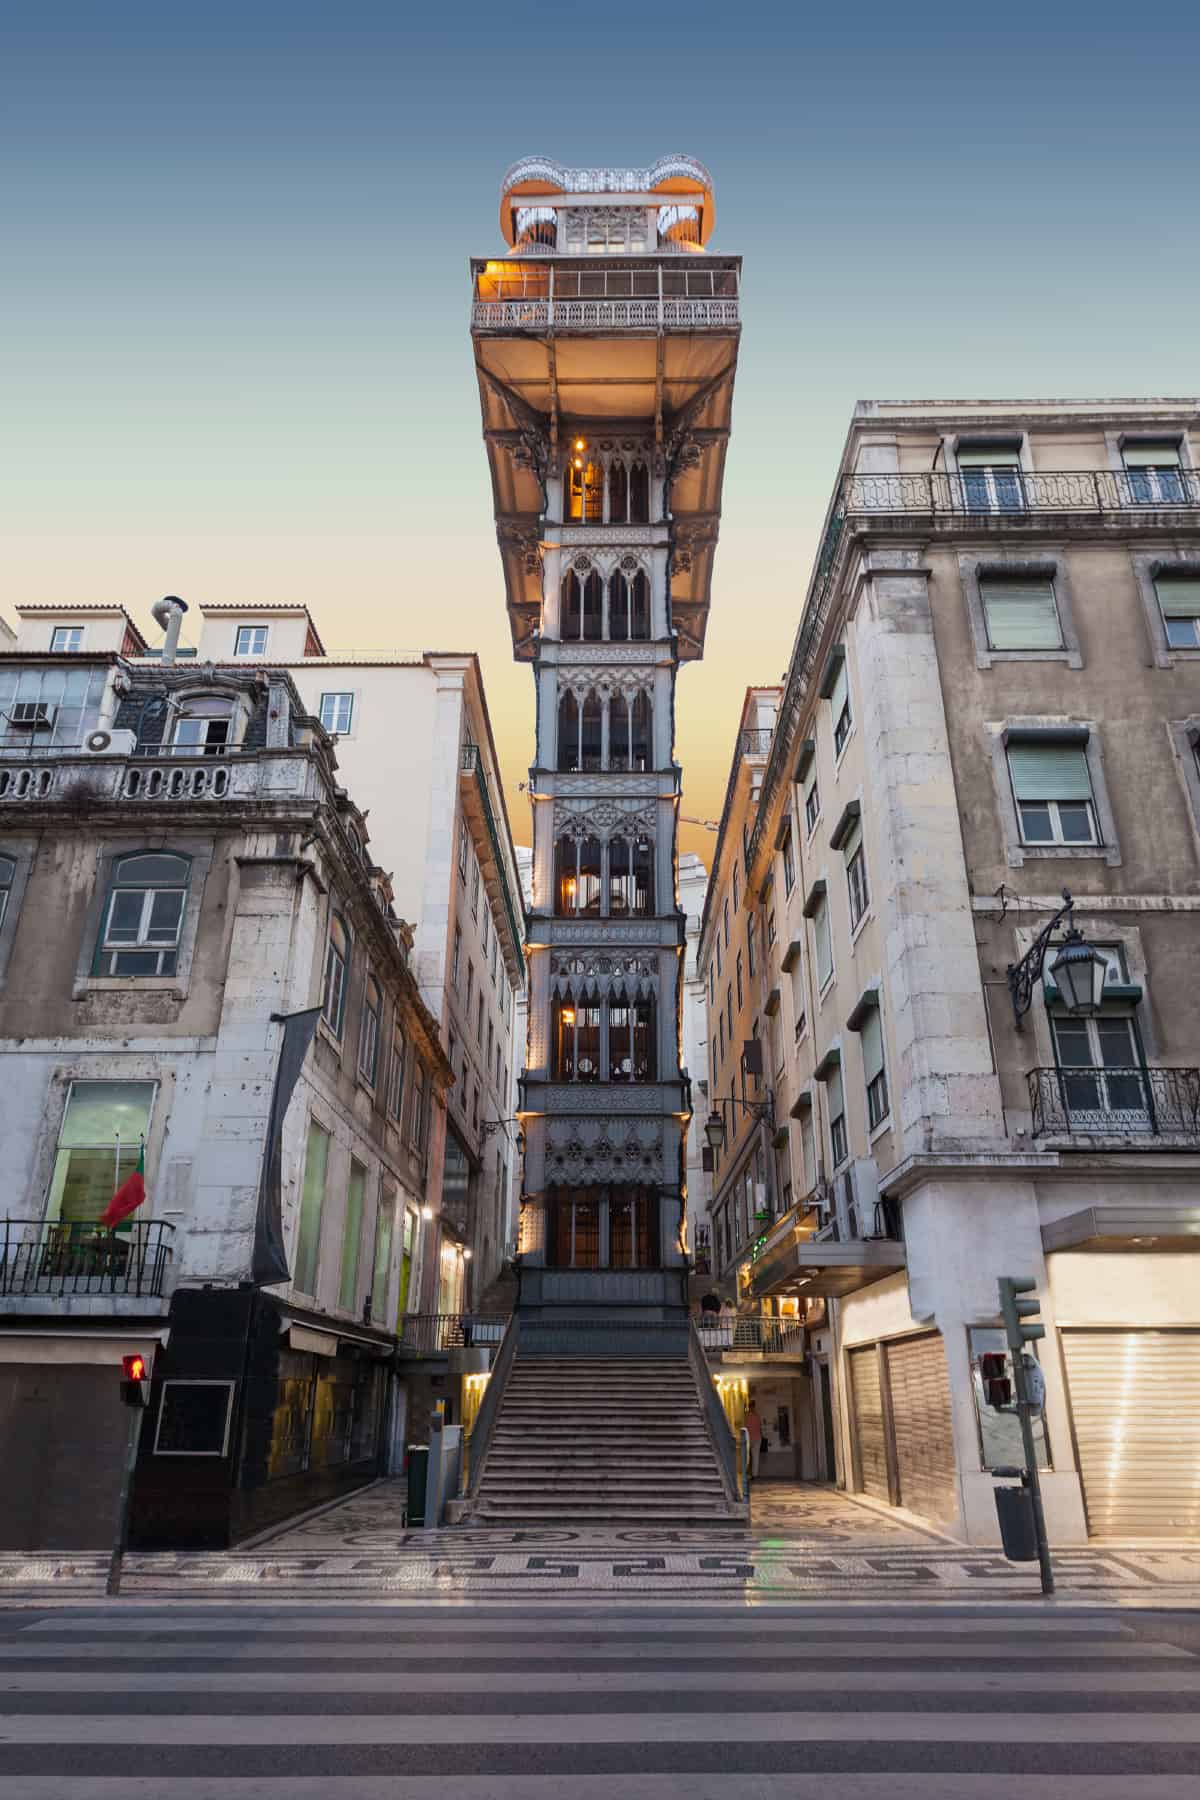 Santa Justa lift in Lissabon, Portugal